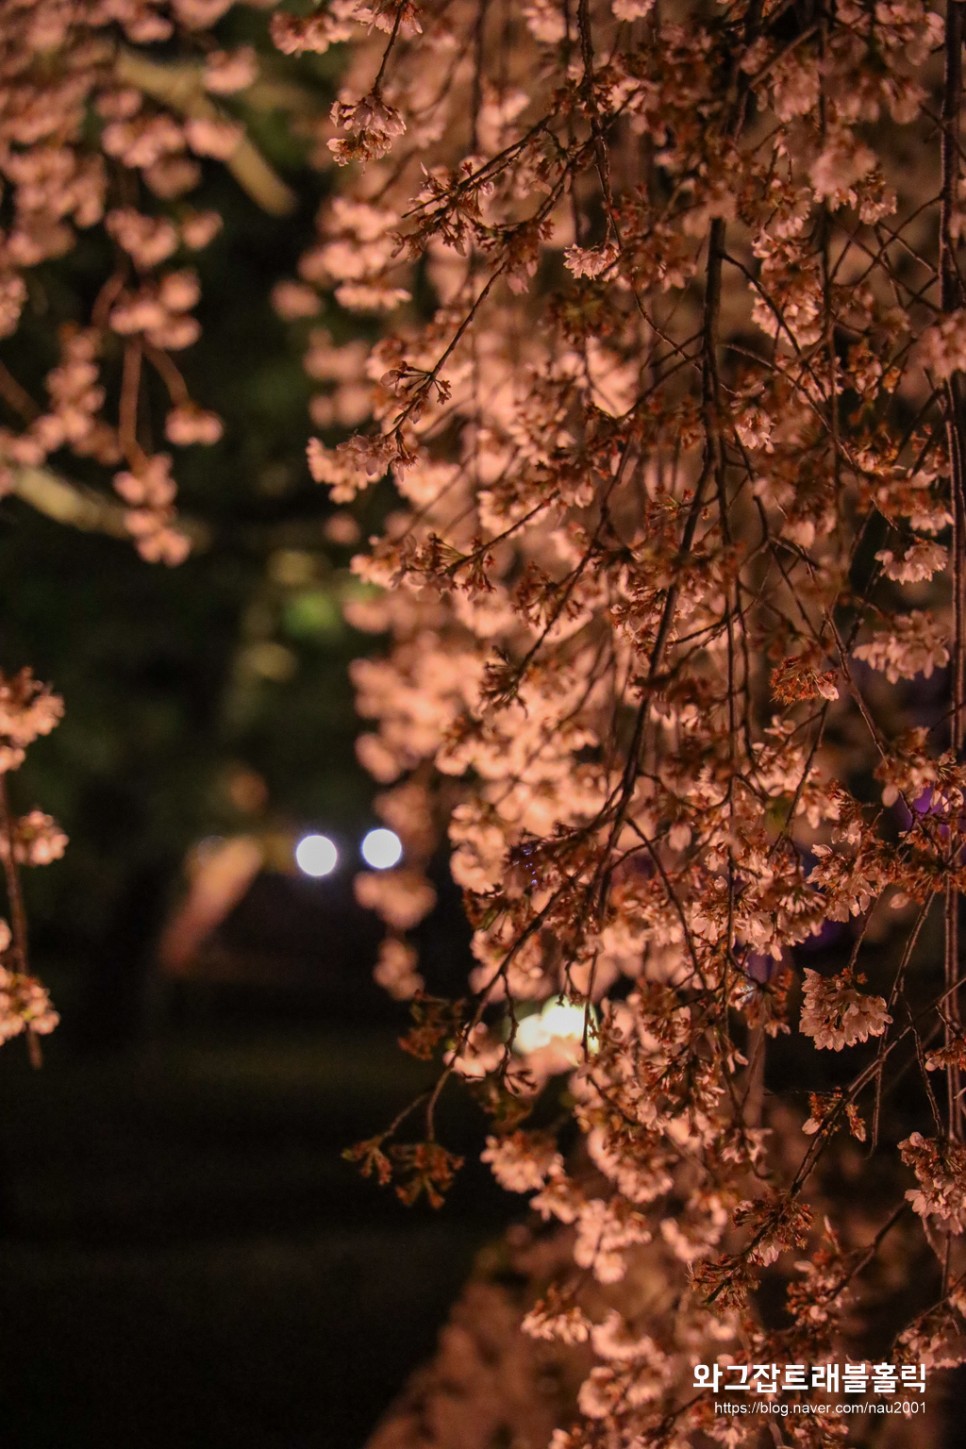 교토 여행코스 저녁 벚꽃 명소 니조성 라이트업 할인 입장료 후기